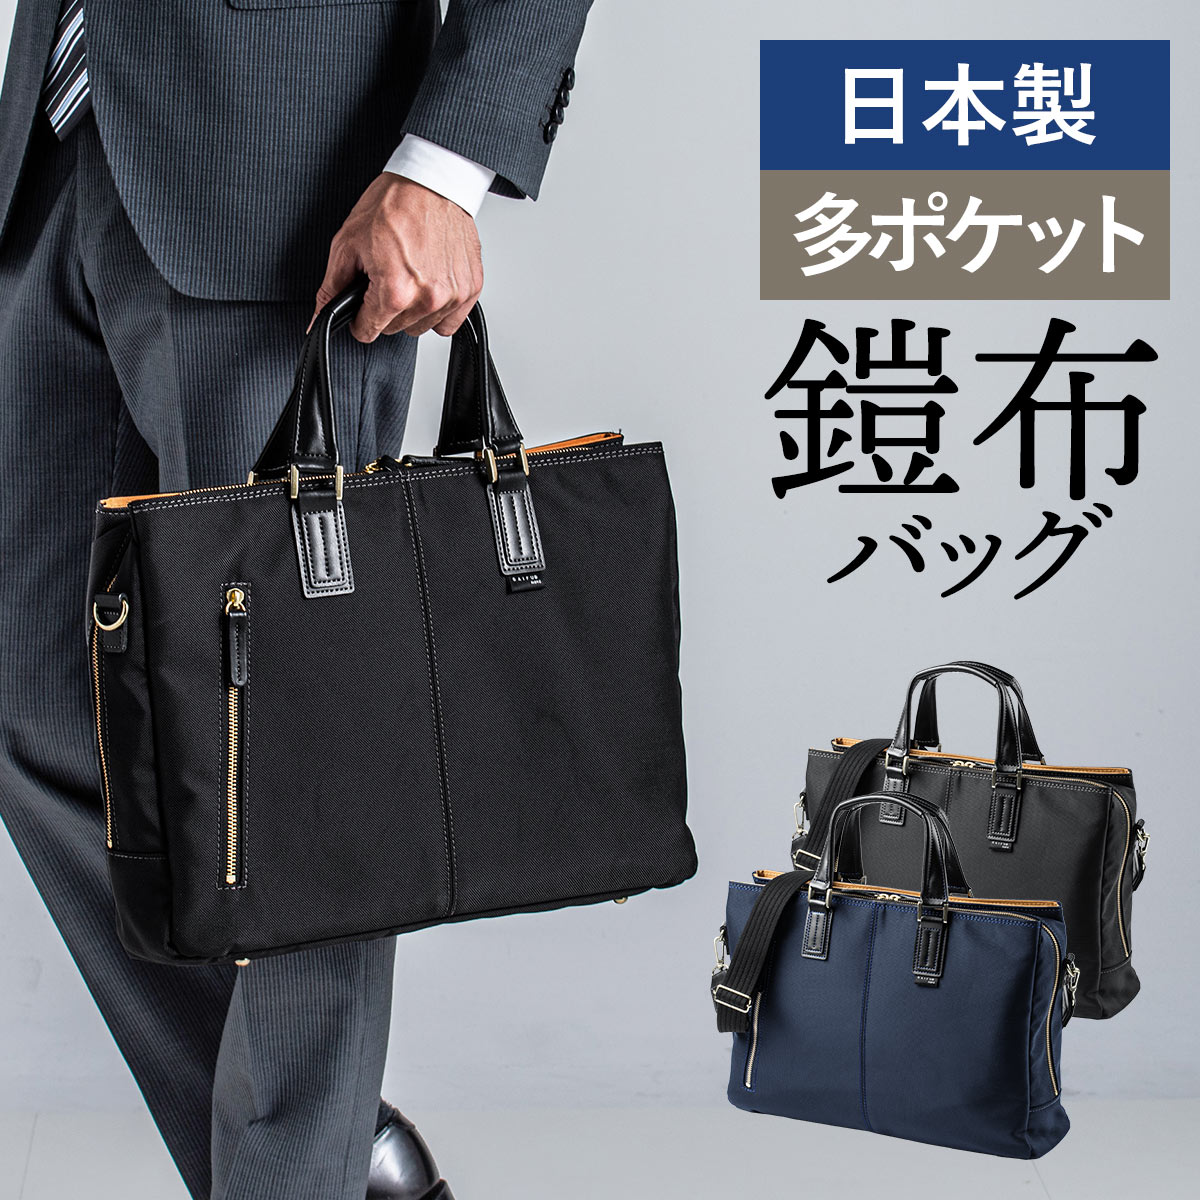 【楽天市場】ビジネスバッグ メンズ 日本製 豊岡縫製 ブランド 国産素材 鎧布 13.3型ワイド A4 2way ダブル収納 高強度ナイロン